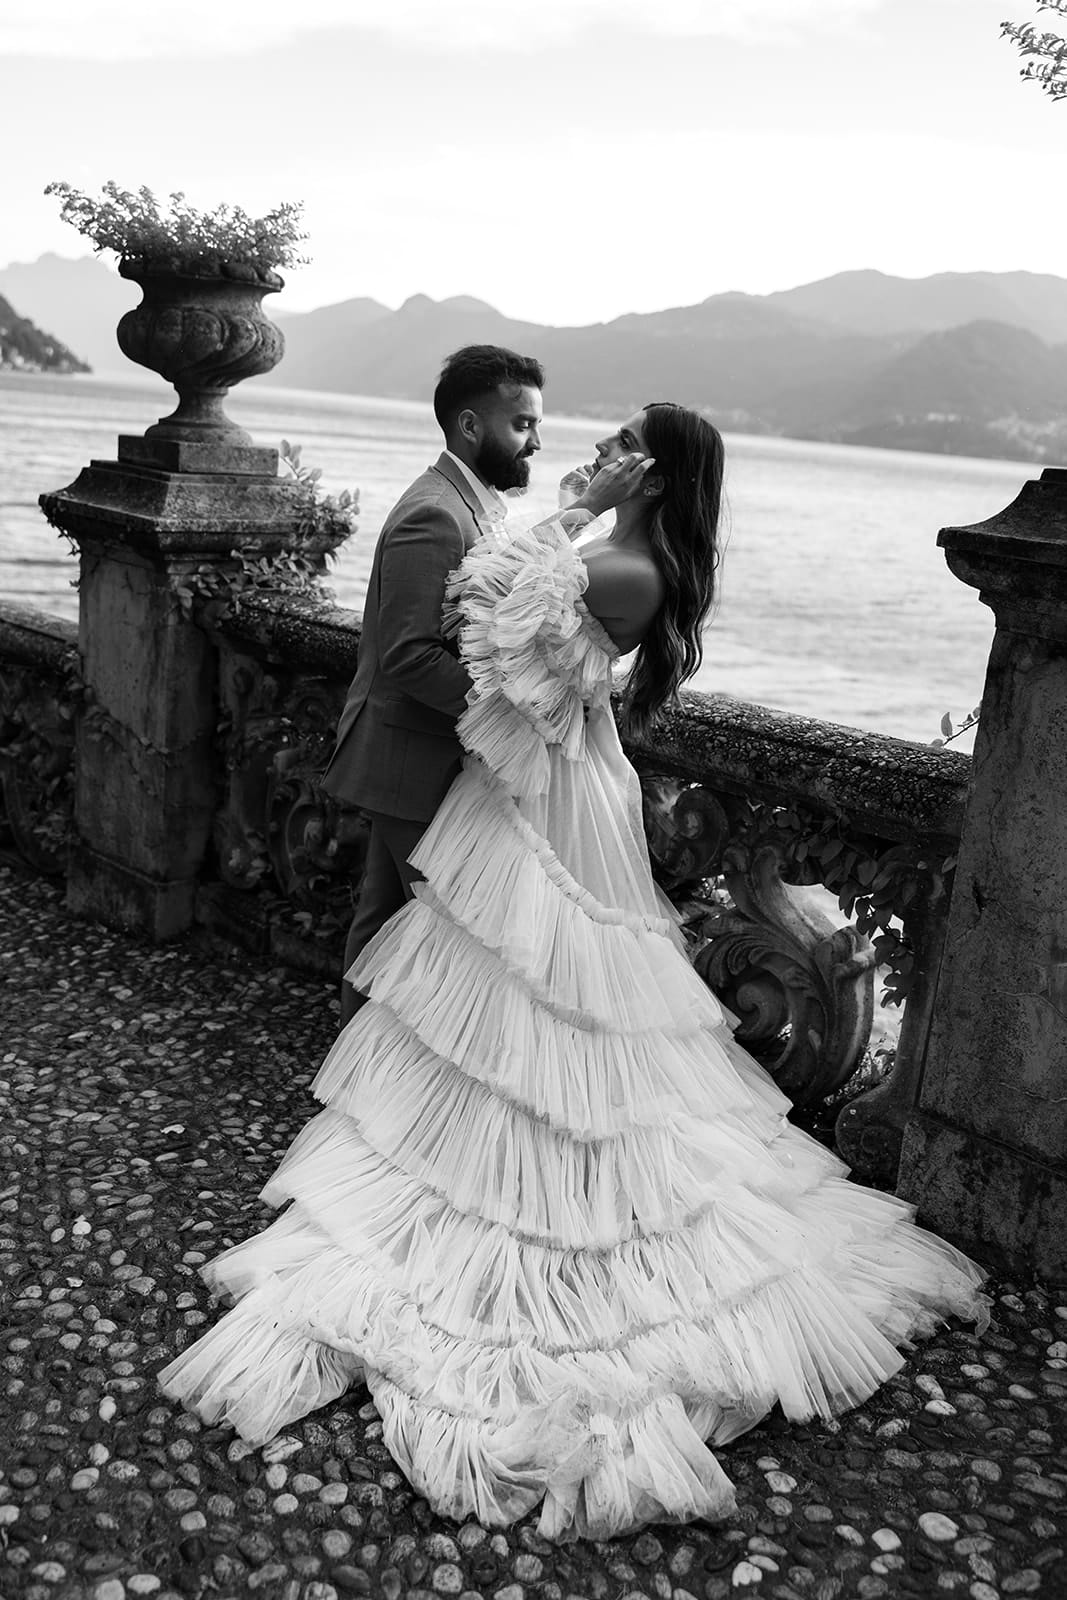 Man and woman outside Villa Monastero Lake Como